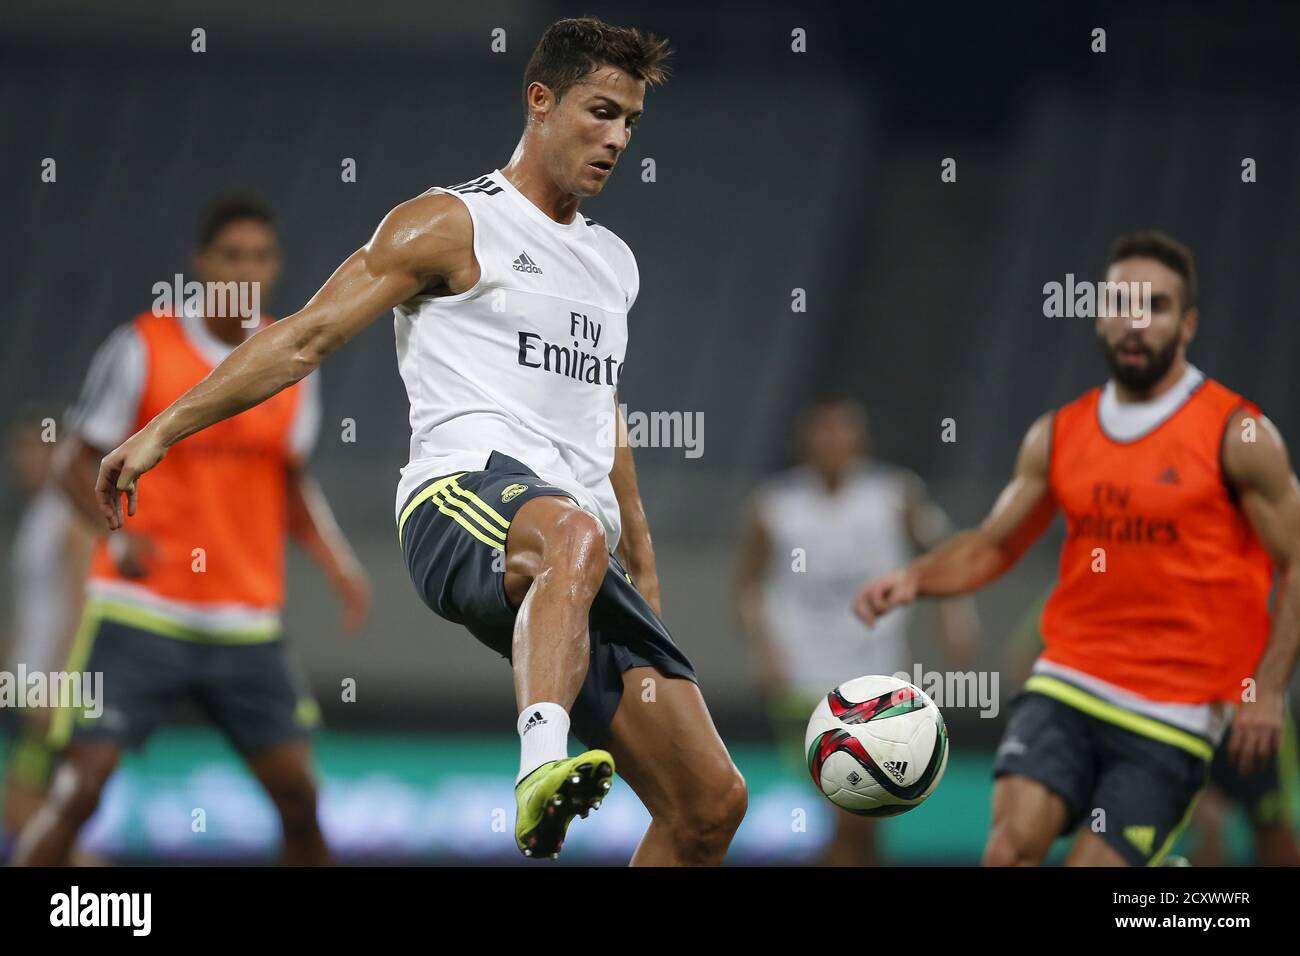 Cristiano Ronaldo von Real Madrid kämpft während einer Trainingseinheit vor  einem Freundschaftsspiel gegen AC Mailand in Shanghai, 29. Juli 2015 um den  Ball.REUTERS/Aly Song Stockfotografie - Alamy